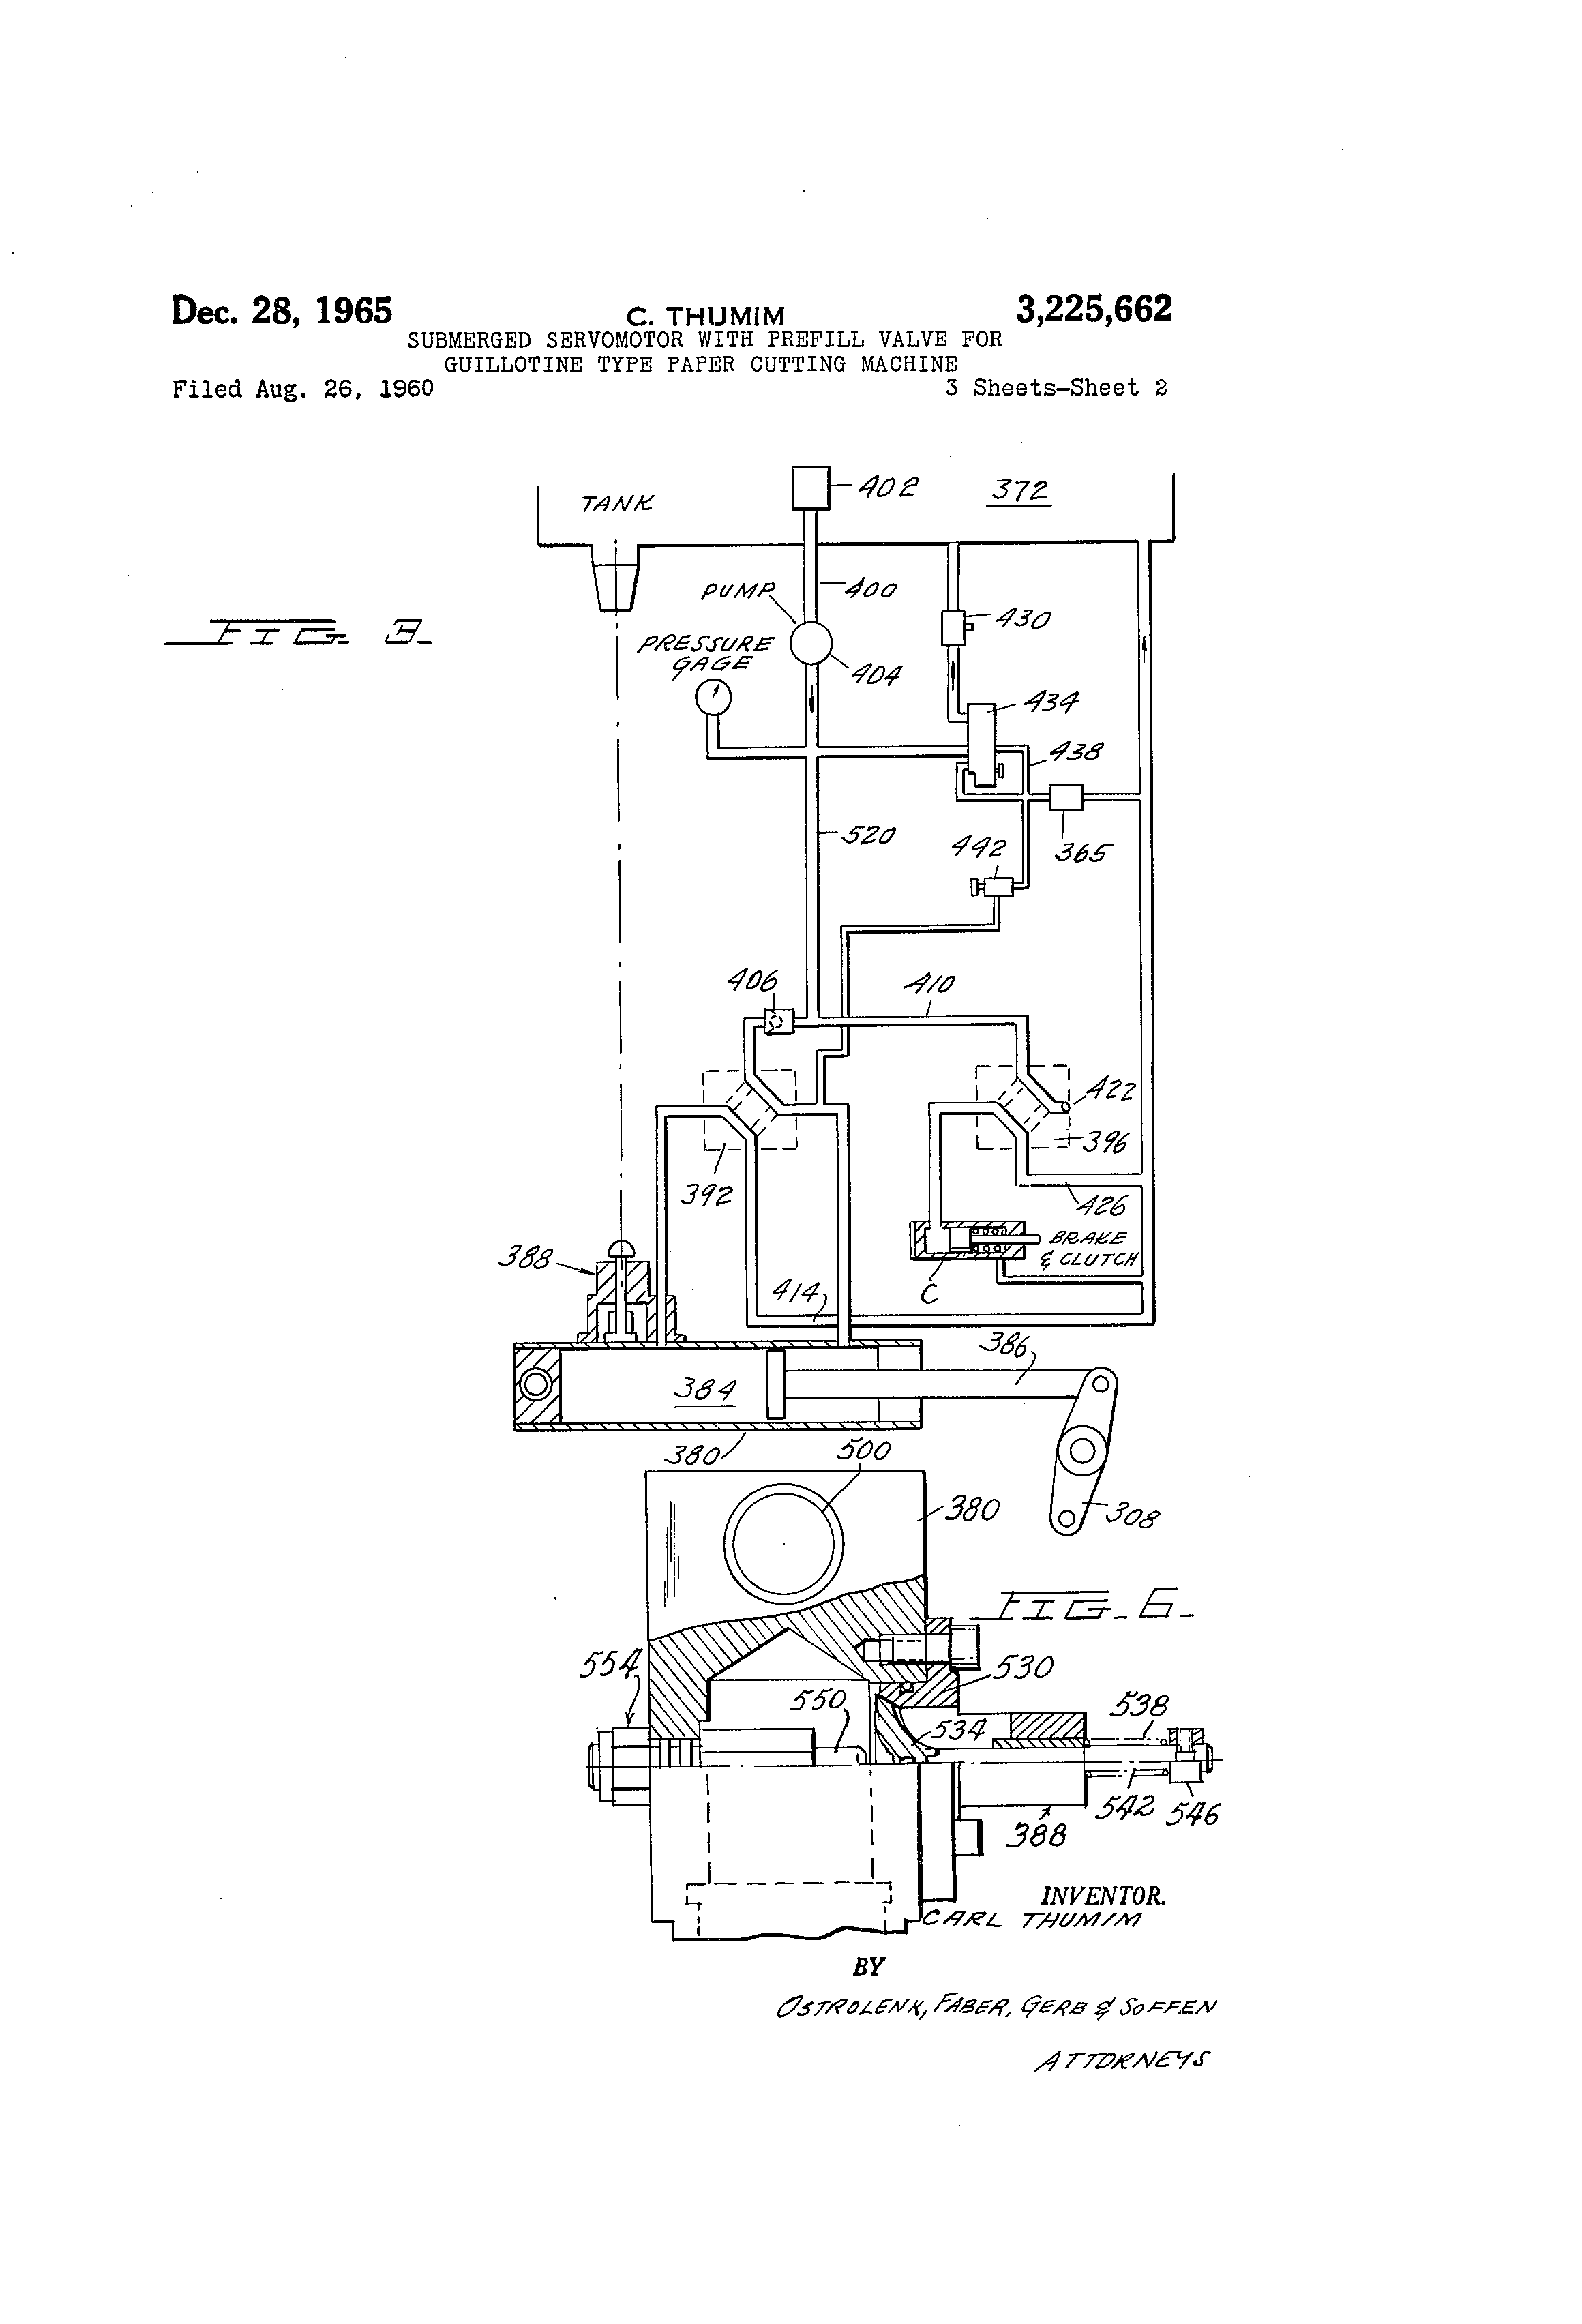 d39px-21 hydraulic pump wiring diagram